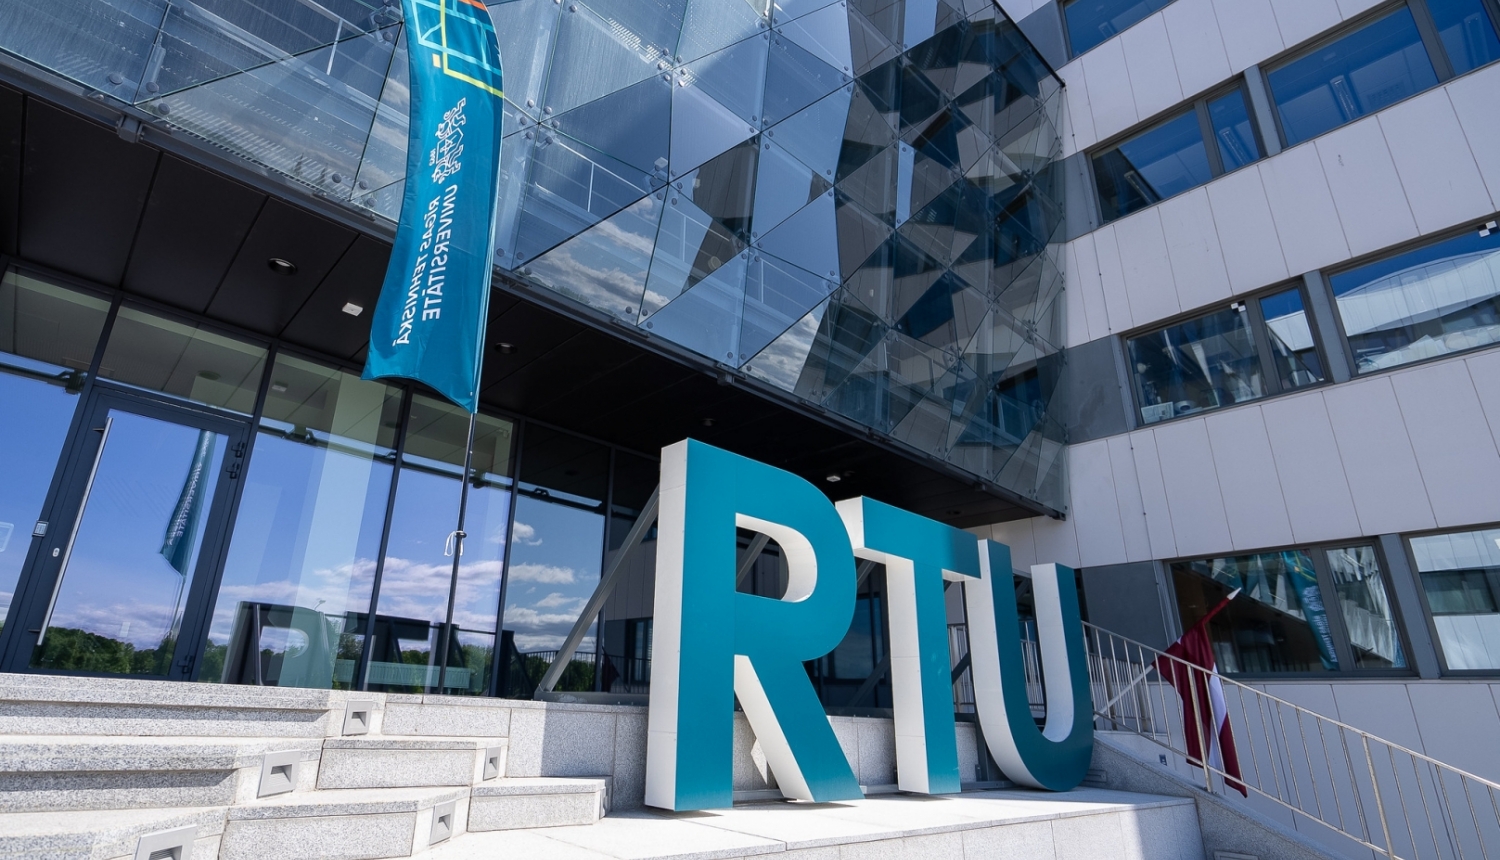 RTU ēka ar karogu un lieliem burtiem